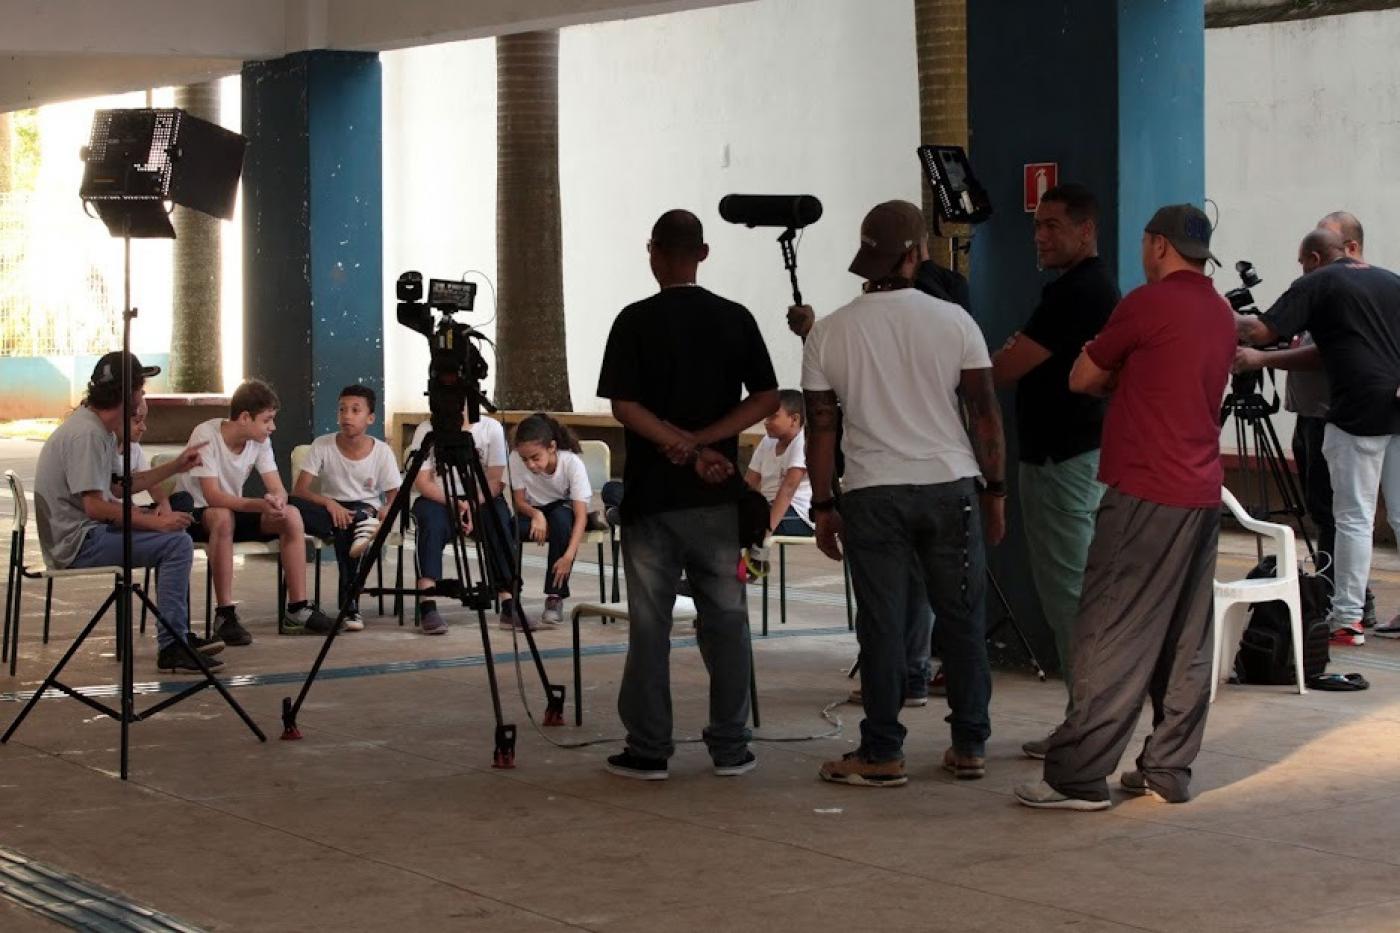 equipe de produção visual, com câmeras está dinate de de crianças que estão sentadas em cadeiras dispostas lado a lado num grande salão. #paratodosverem